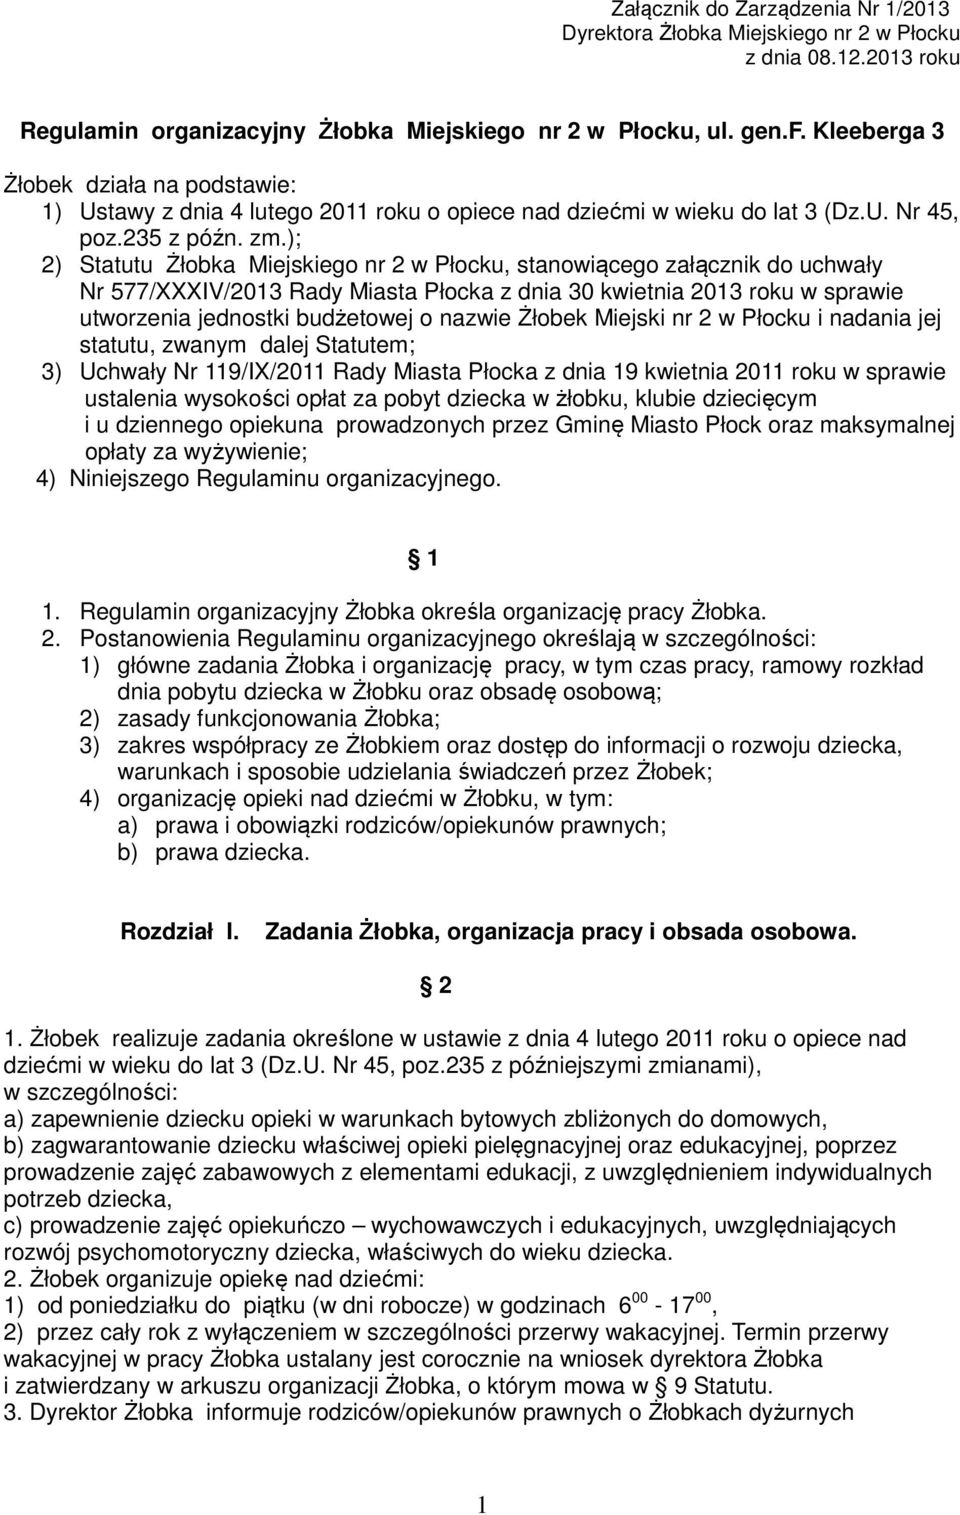 ); 2) Statutu Żłobka Miejskiego nr 2 w Płocku, stanowiącego załącznik do uchwały Nr 577/XXXIV/2013 Rady Miasta Płocka z dnia 30 kwietnia 2013 roku w sprawie utworzenia jednostki budżetowej o nazwie